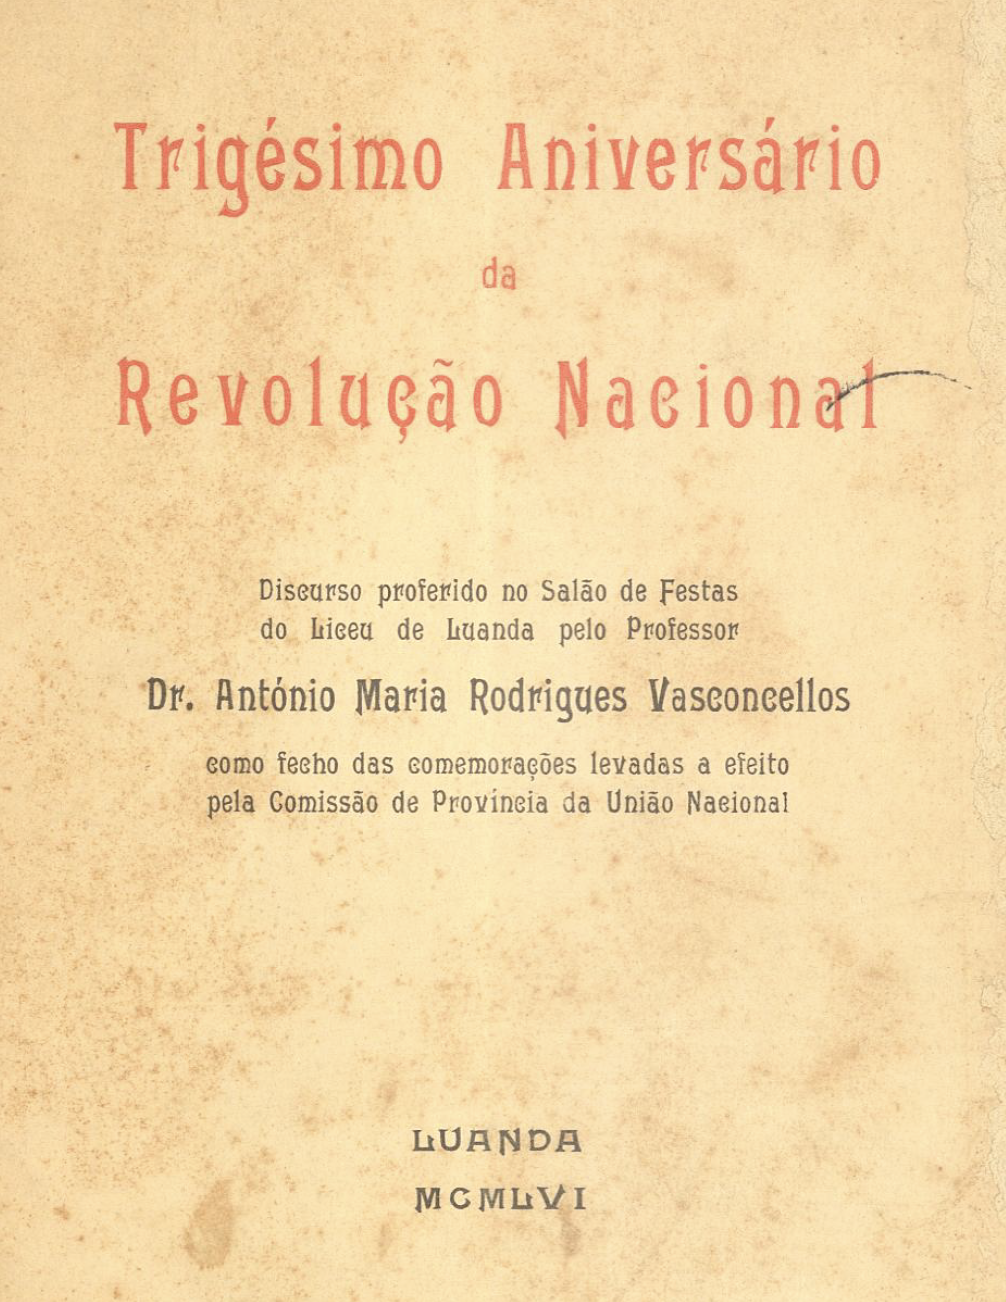 Trigésimo aniversário da revolução nacional